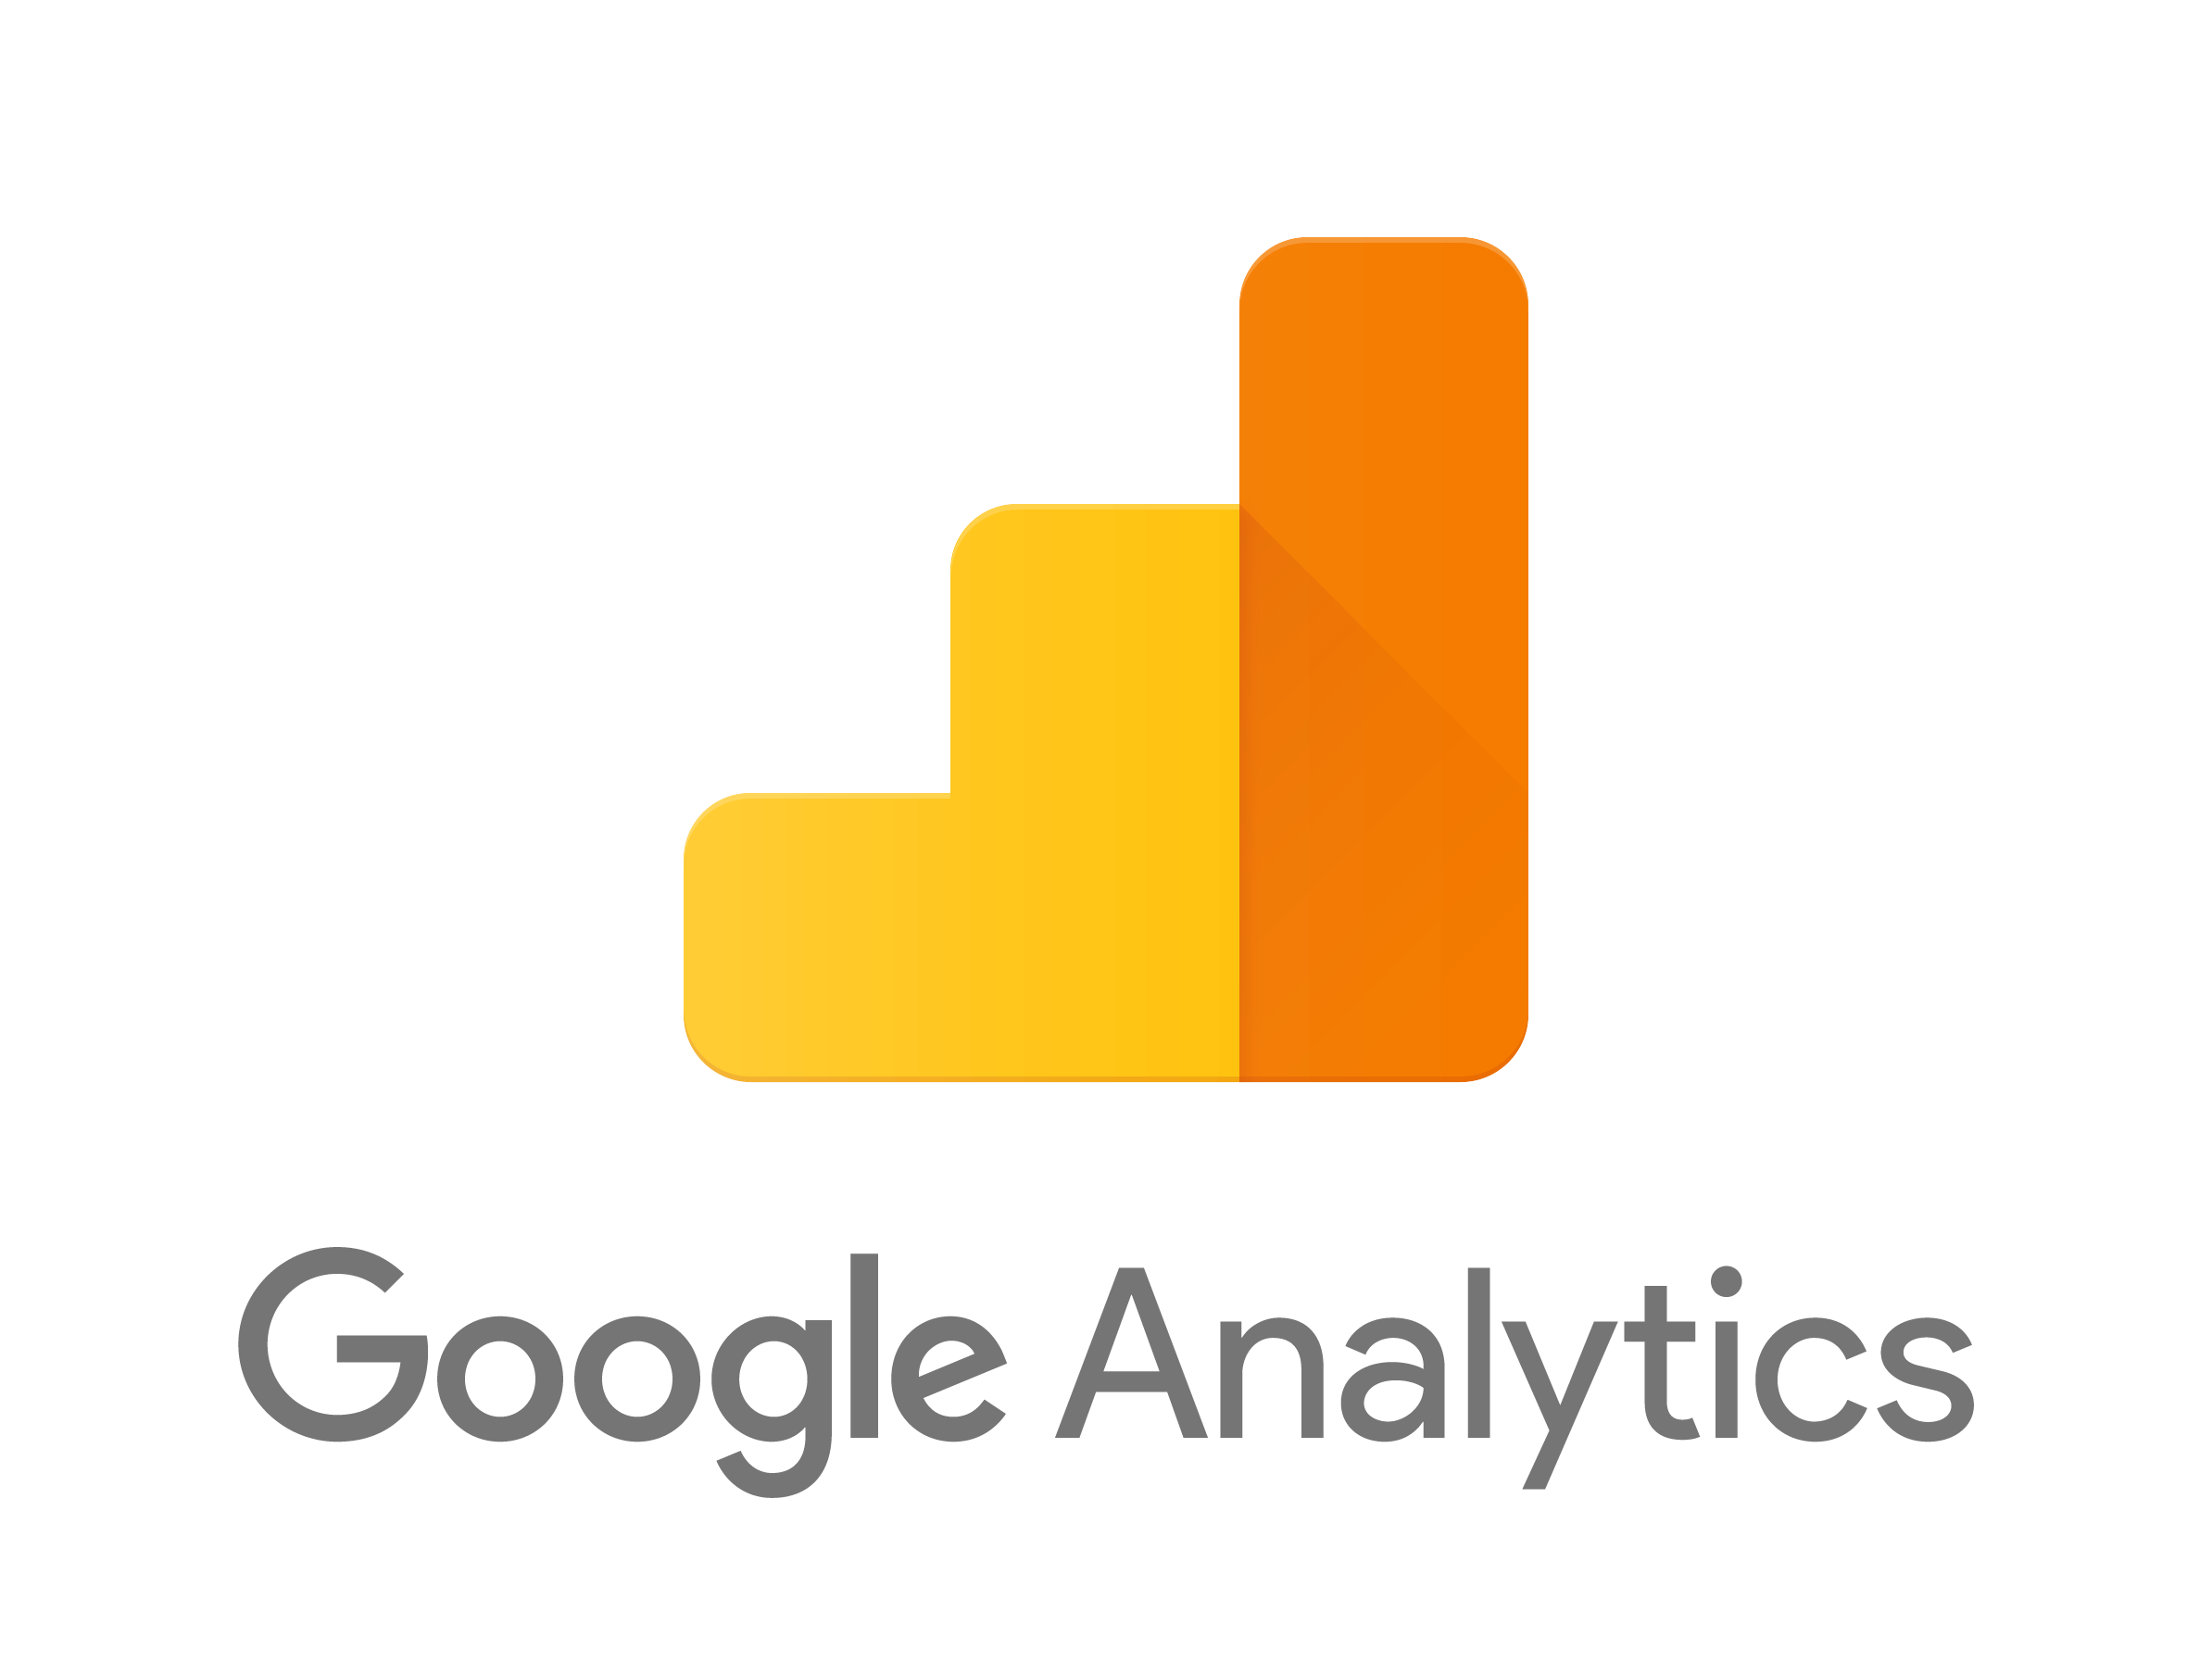 Google analytics tool verwendet man um webseiten trafik zu analysieren und verbesern